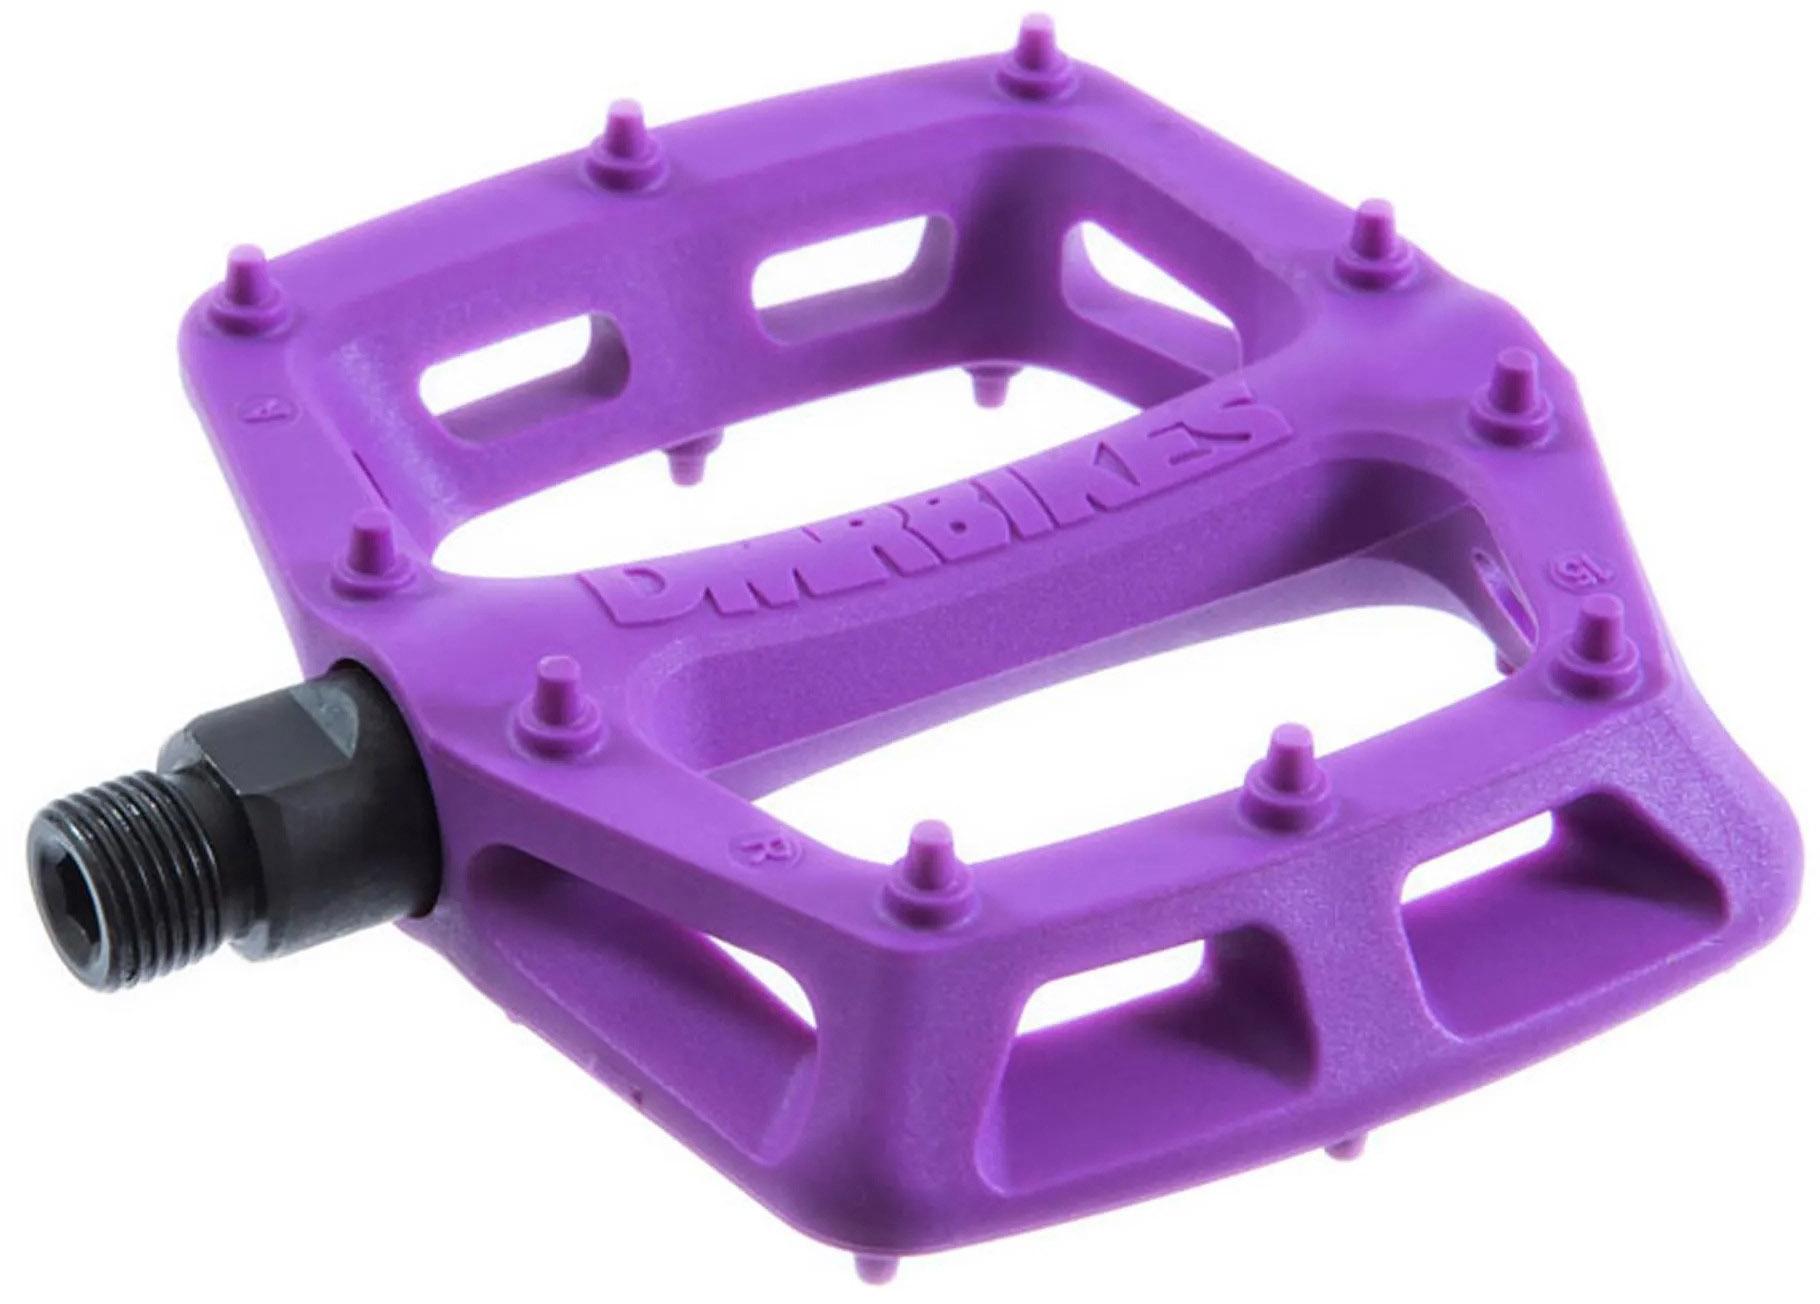 Dmr V6 Plastic Flat Pedals - Purple